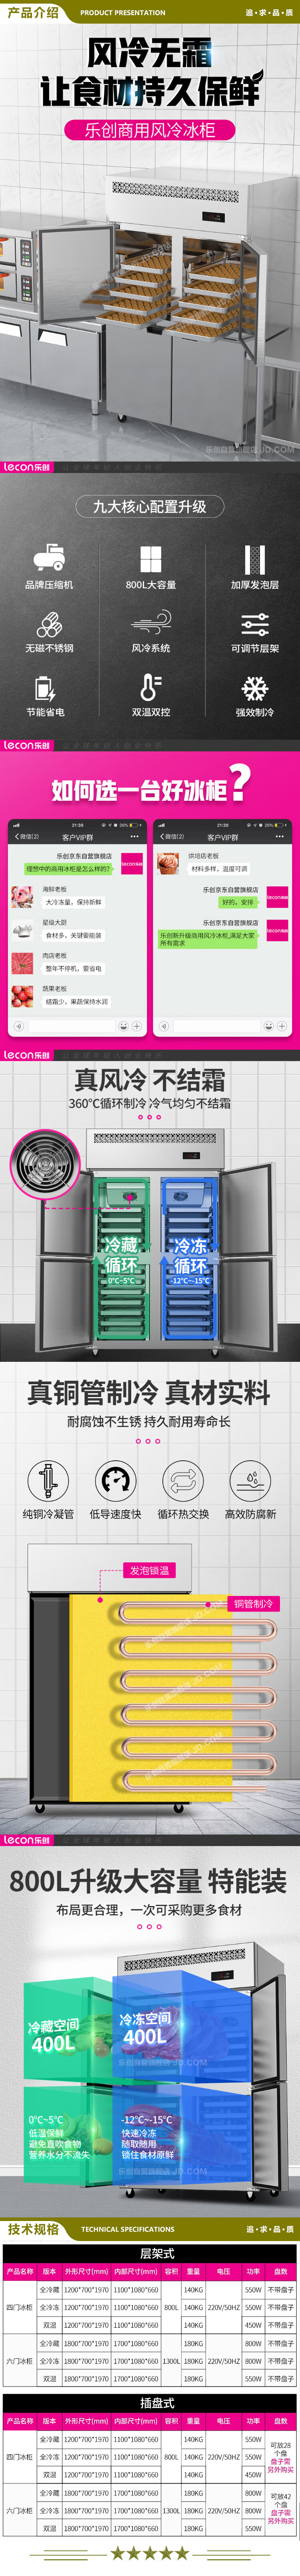 乐创(lecon) LC-SMBG01 冷藏商用四门冰柜厨房冰箱双温冷藏冷冻餐饮立式后厨保鲜柜冷柜风冷插盘式  2.jpg